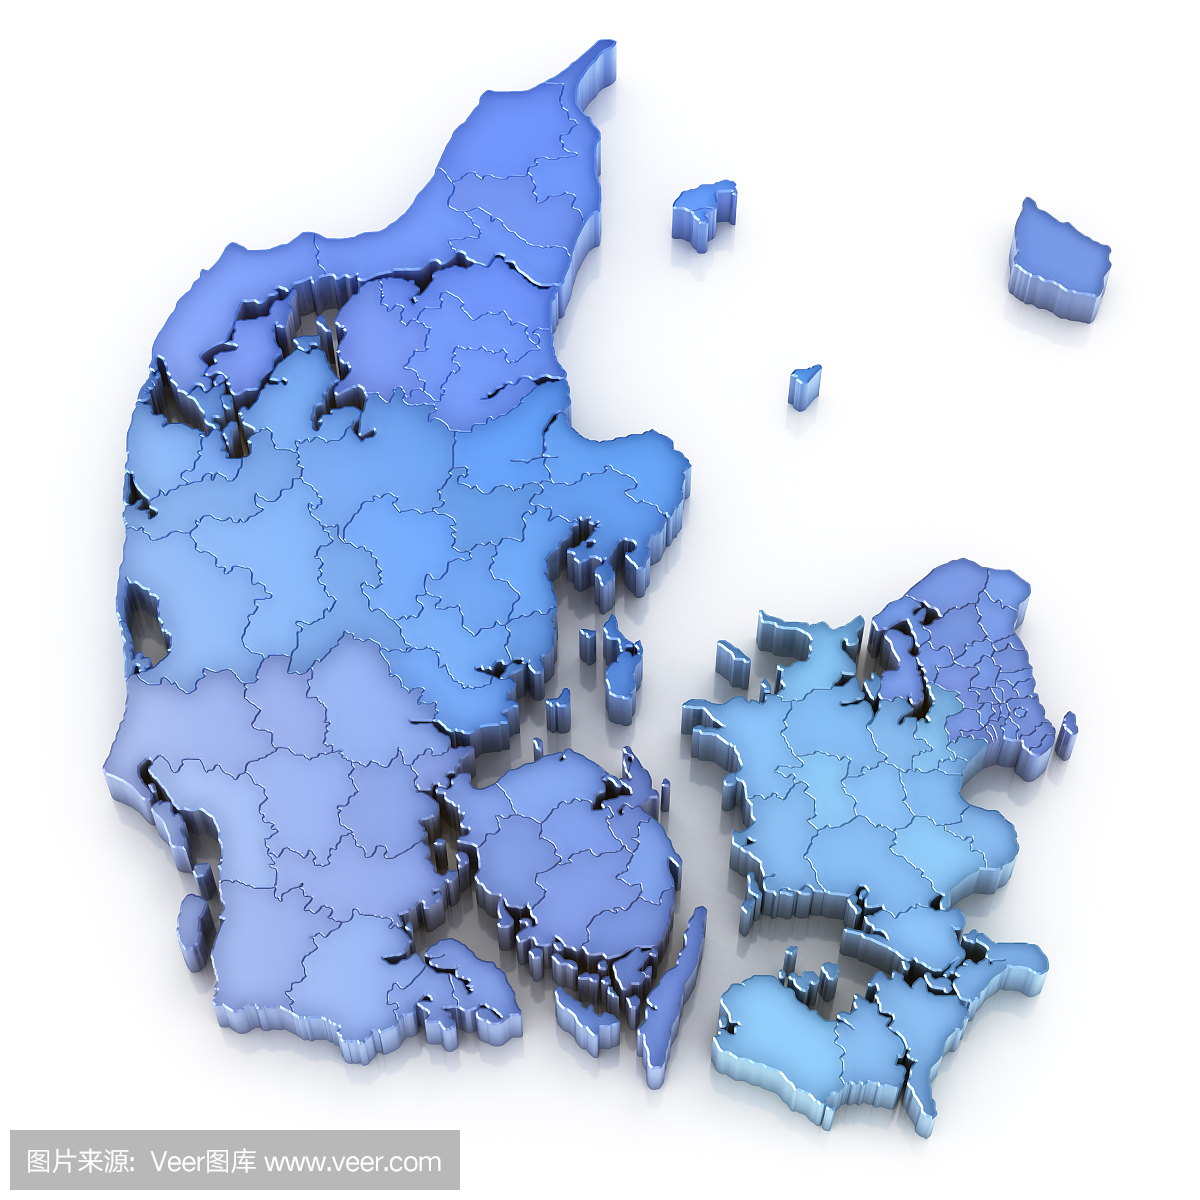 丹麦地图与地区和市镇